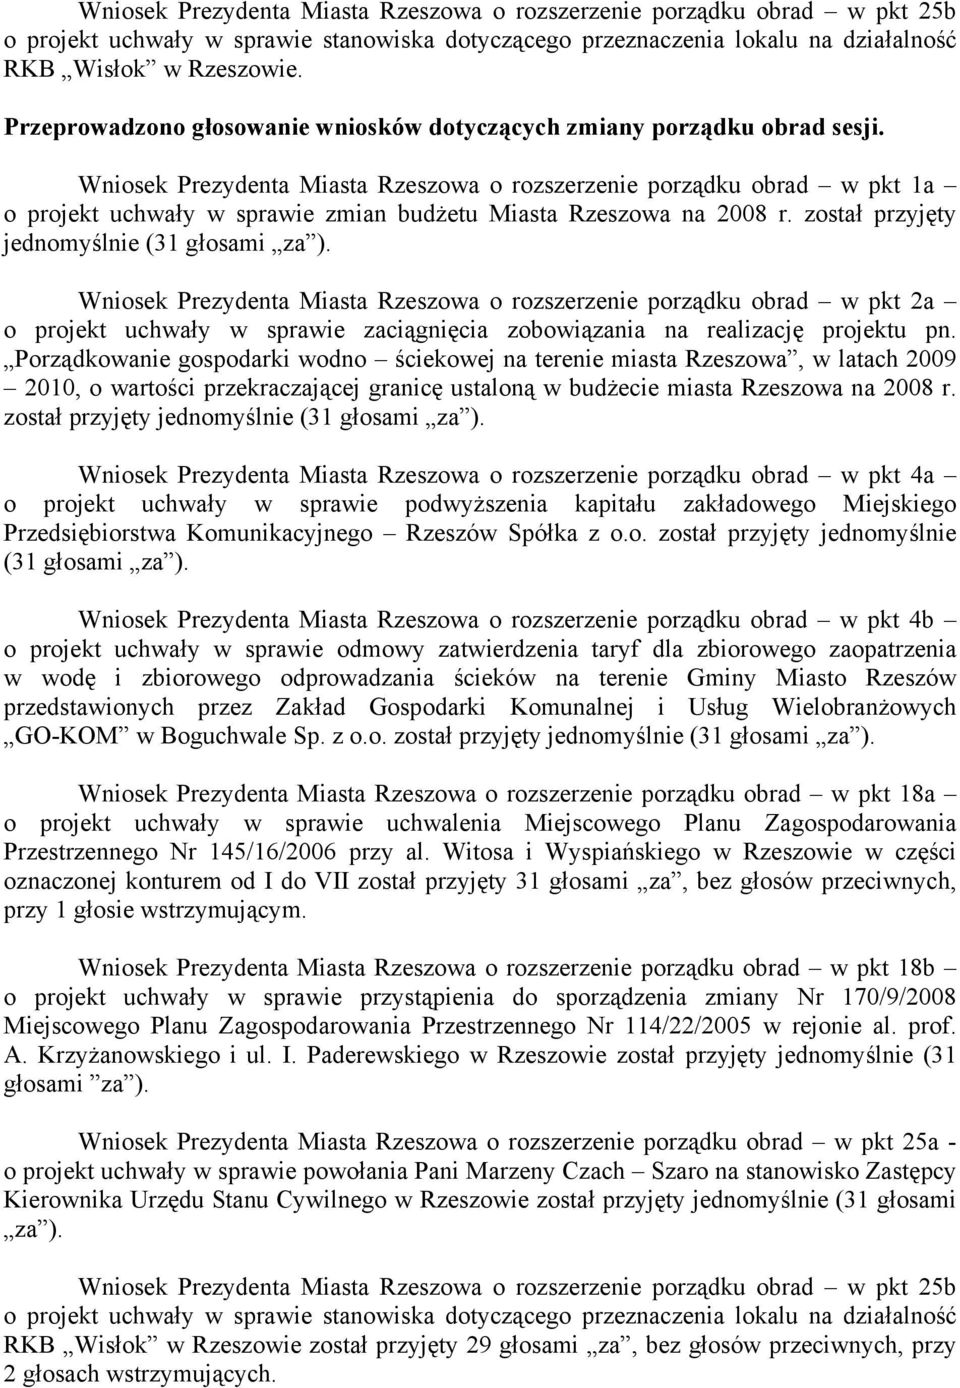 Wniosek Prezydenta Miasta Rzeszowa o rozszerzenie porządku obrad w pkt 1a o projekt uchwały w sprawie zmian budżetu Miasta Rzeszowa na 2008 r. został przyjęty jednomyślnie (31 głosami za ).